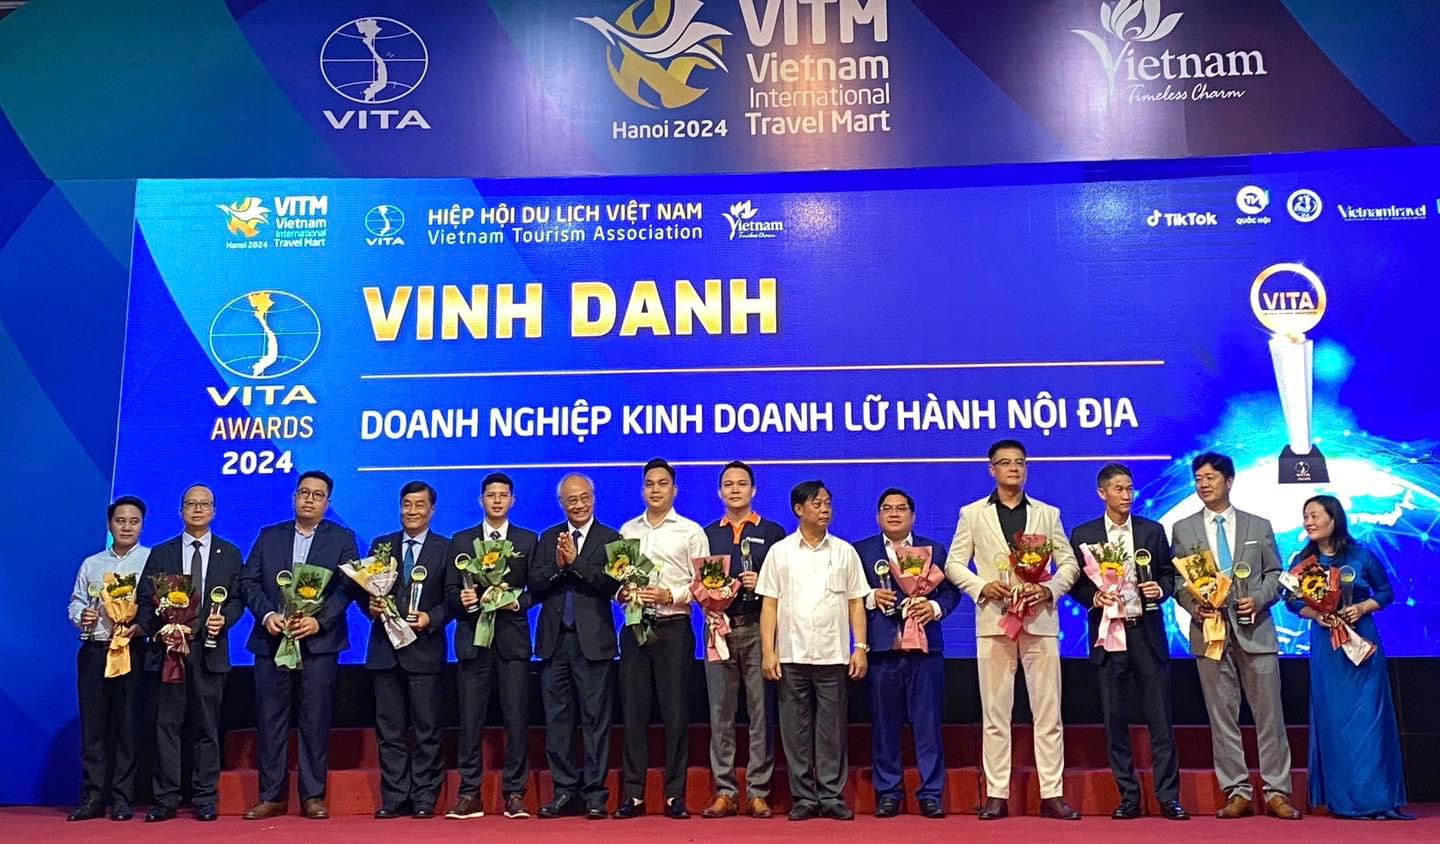 (vneconomy.vn) BestPrice tự hào nhận giải thưởng Công ty lữ hành hàng đầu Việt Nam